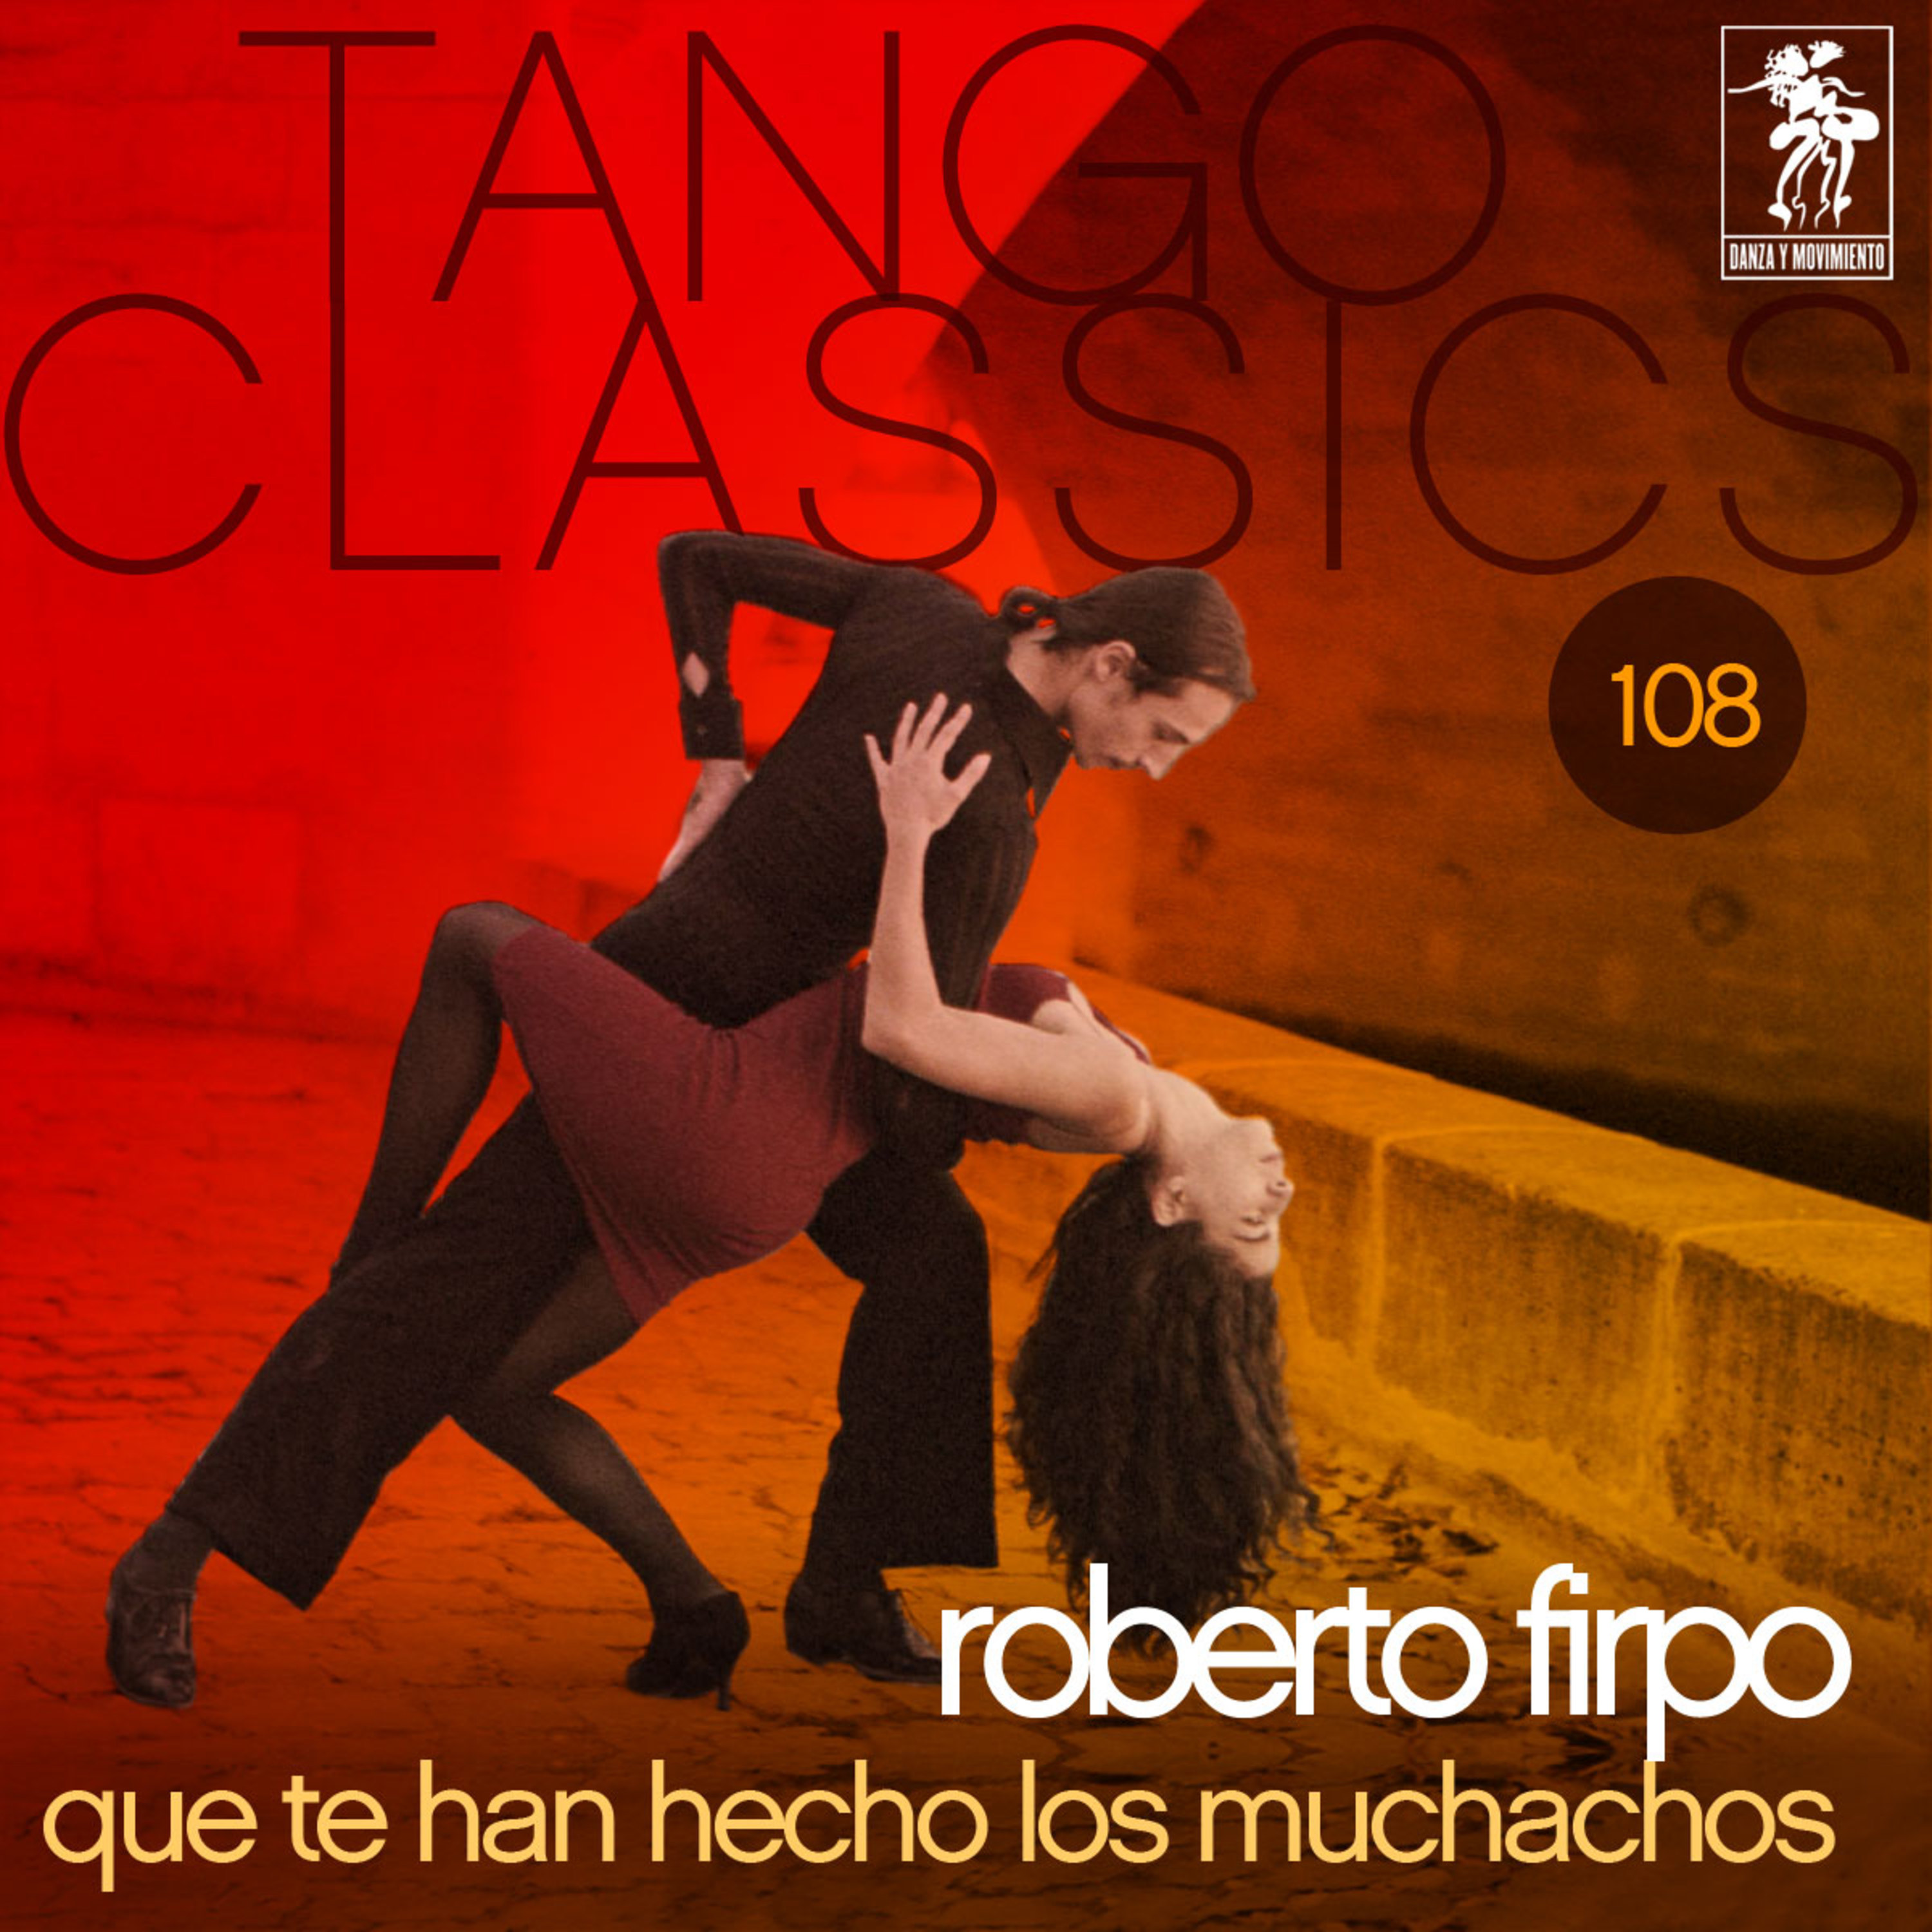 Viejo tango